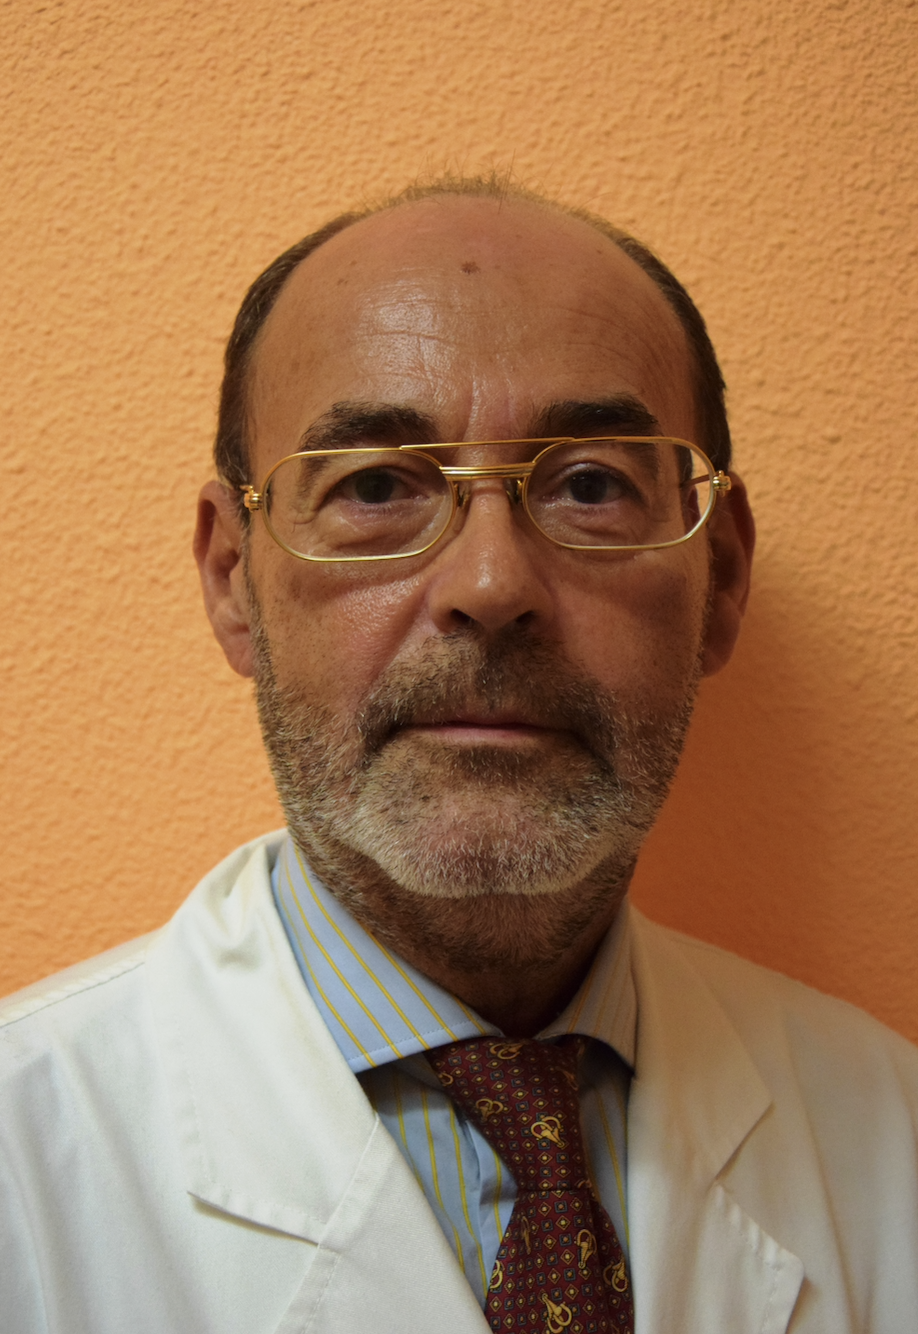 DR. LUIS DE LA SERNA